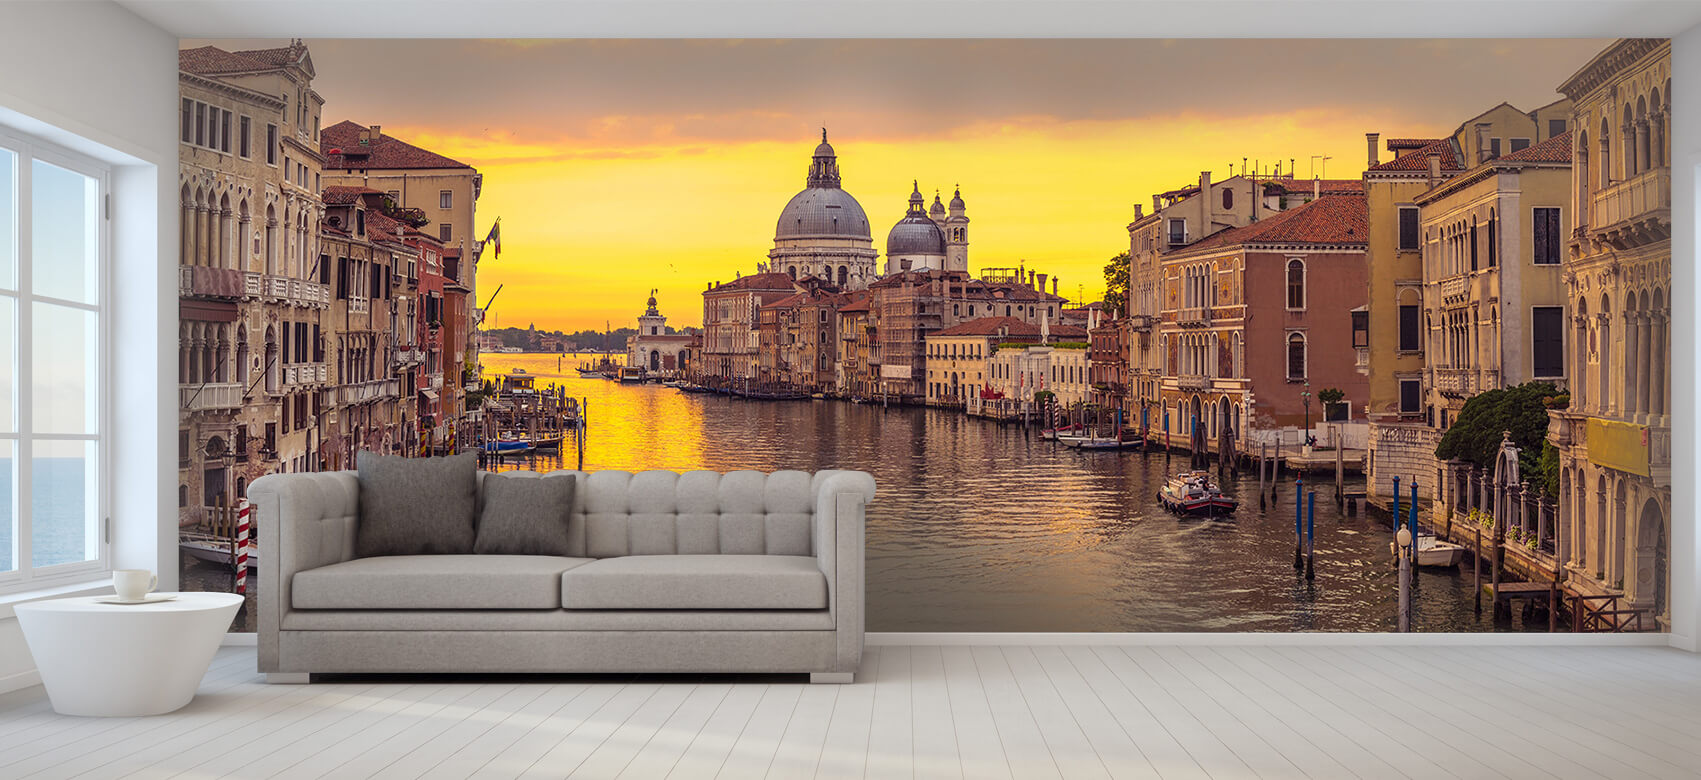 Ciudades - Papel pintado con Canal en Venecia - Salón 8